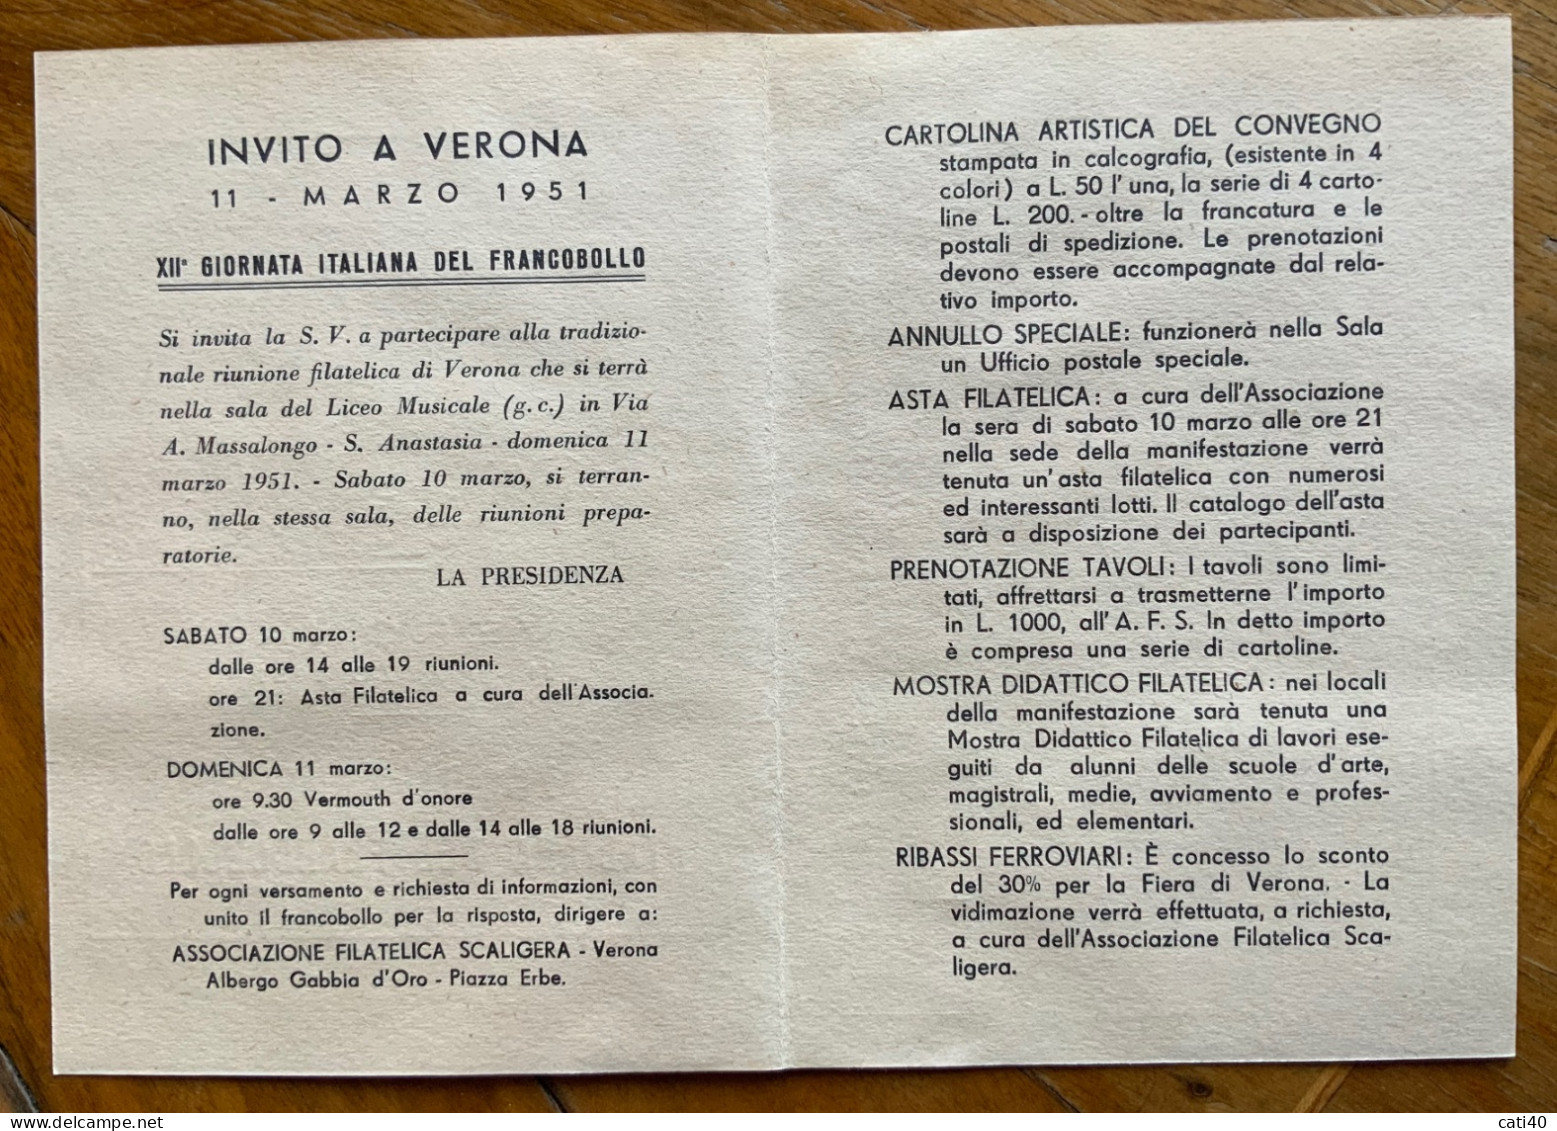 VERONA 1951 - XII GIORNATA ITALIANA DEL FRANCOBOLLO - CARTOLINA PROGRAMMA - Demonstrations